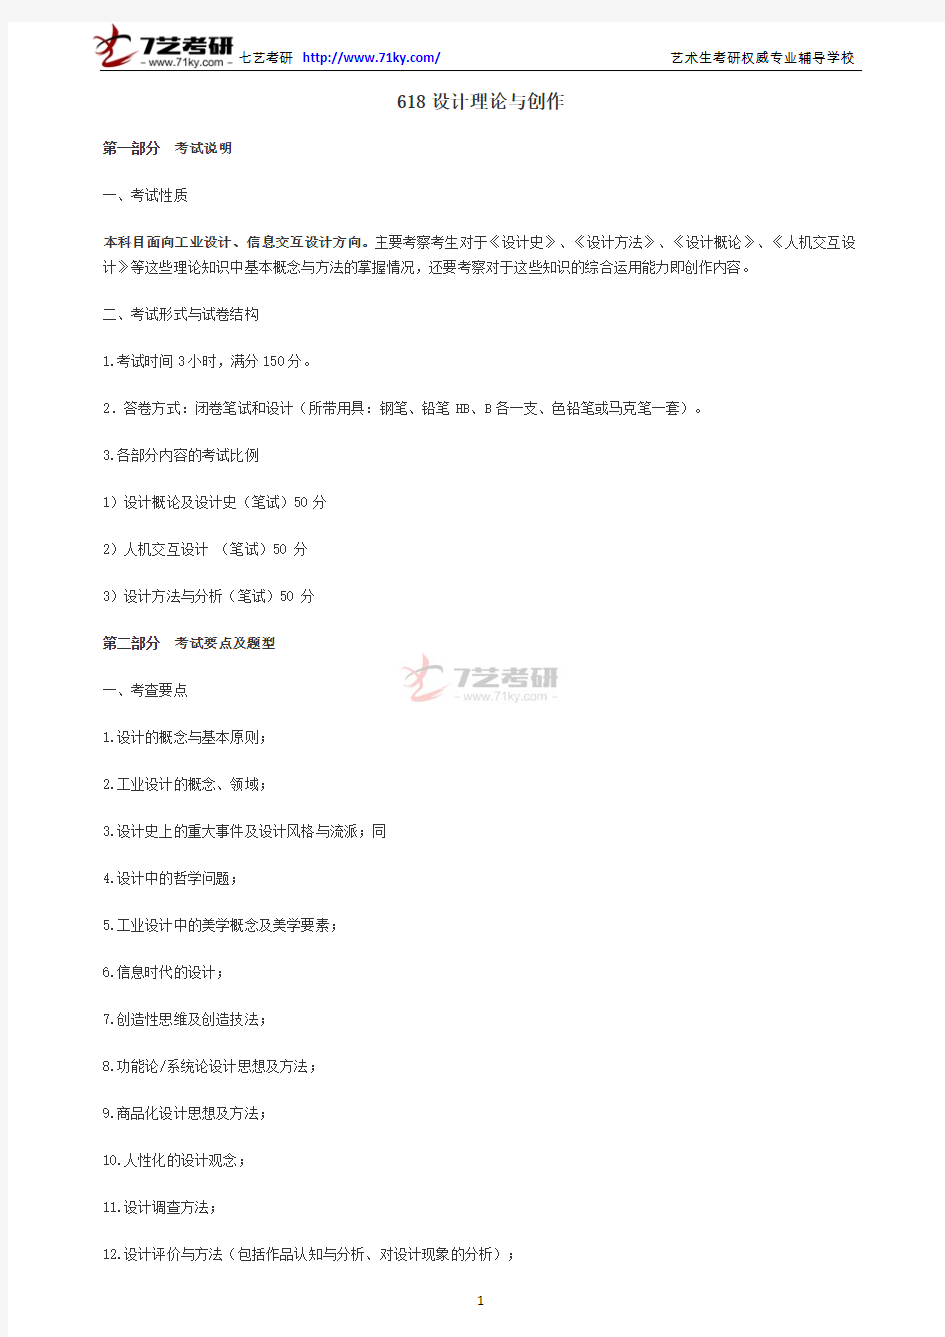 2015年北京邮电大学618设计理论与创作考试大纲